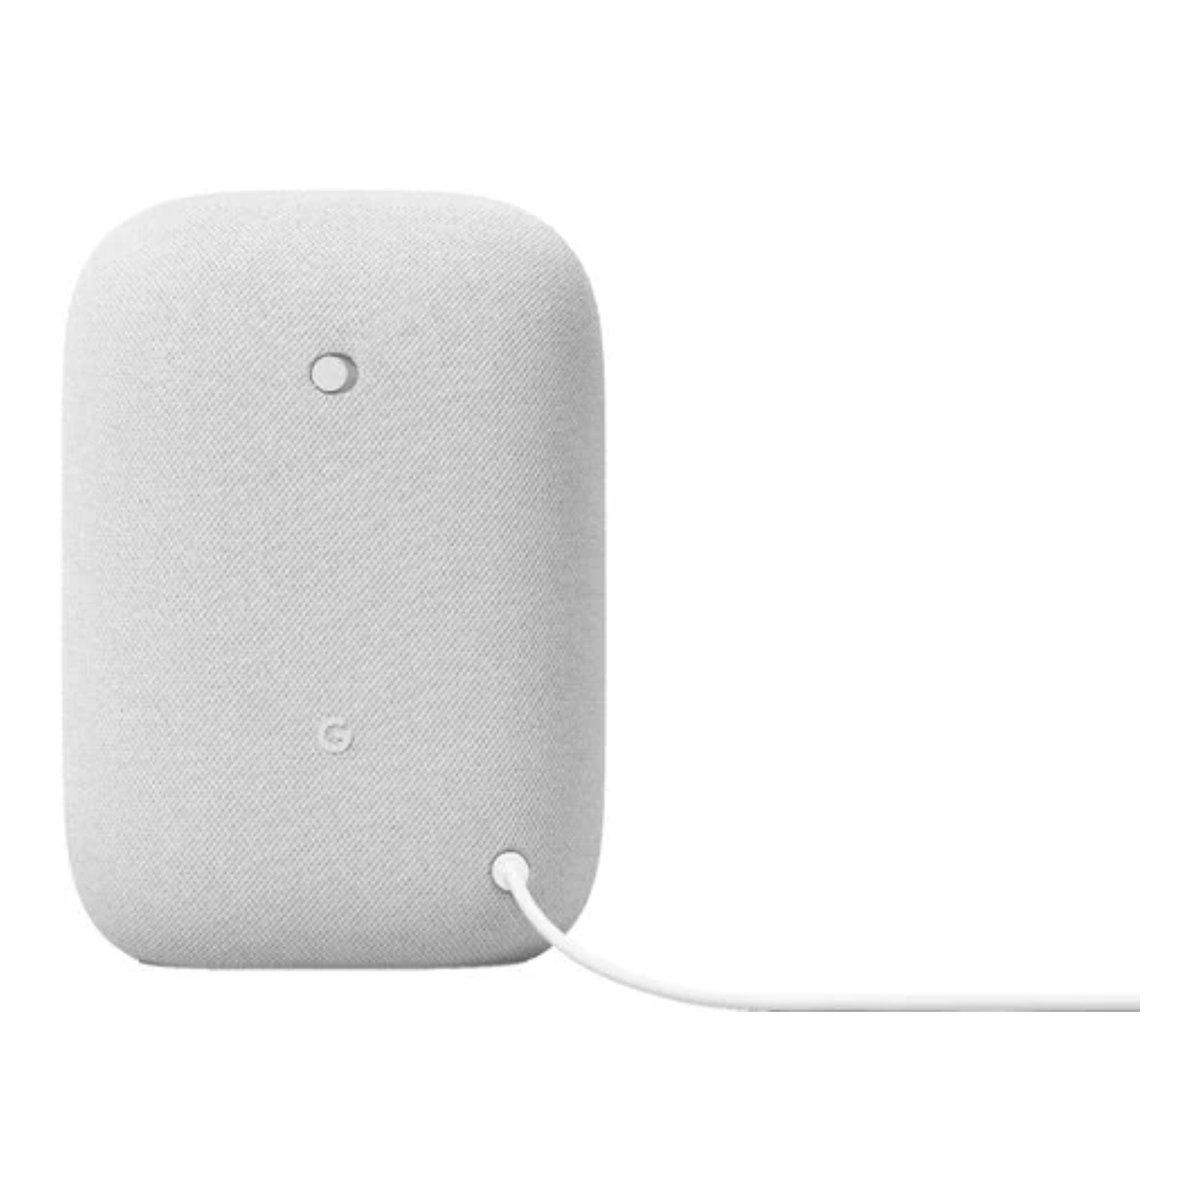 Google Nest Audio Smart Speaker GA01426 Chalk